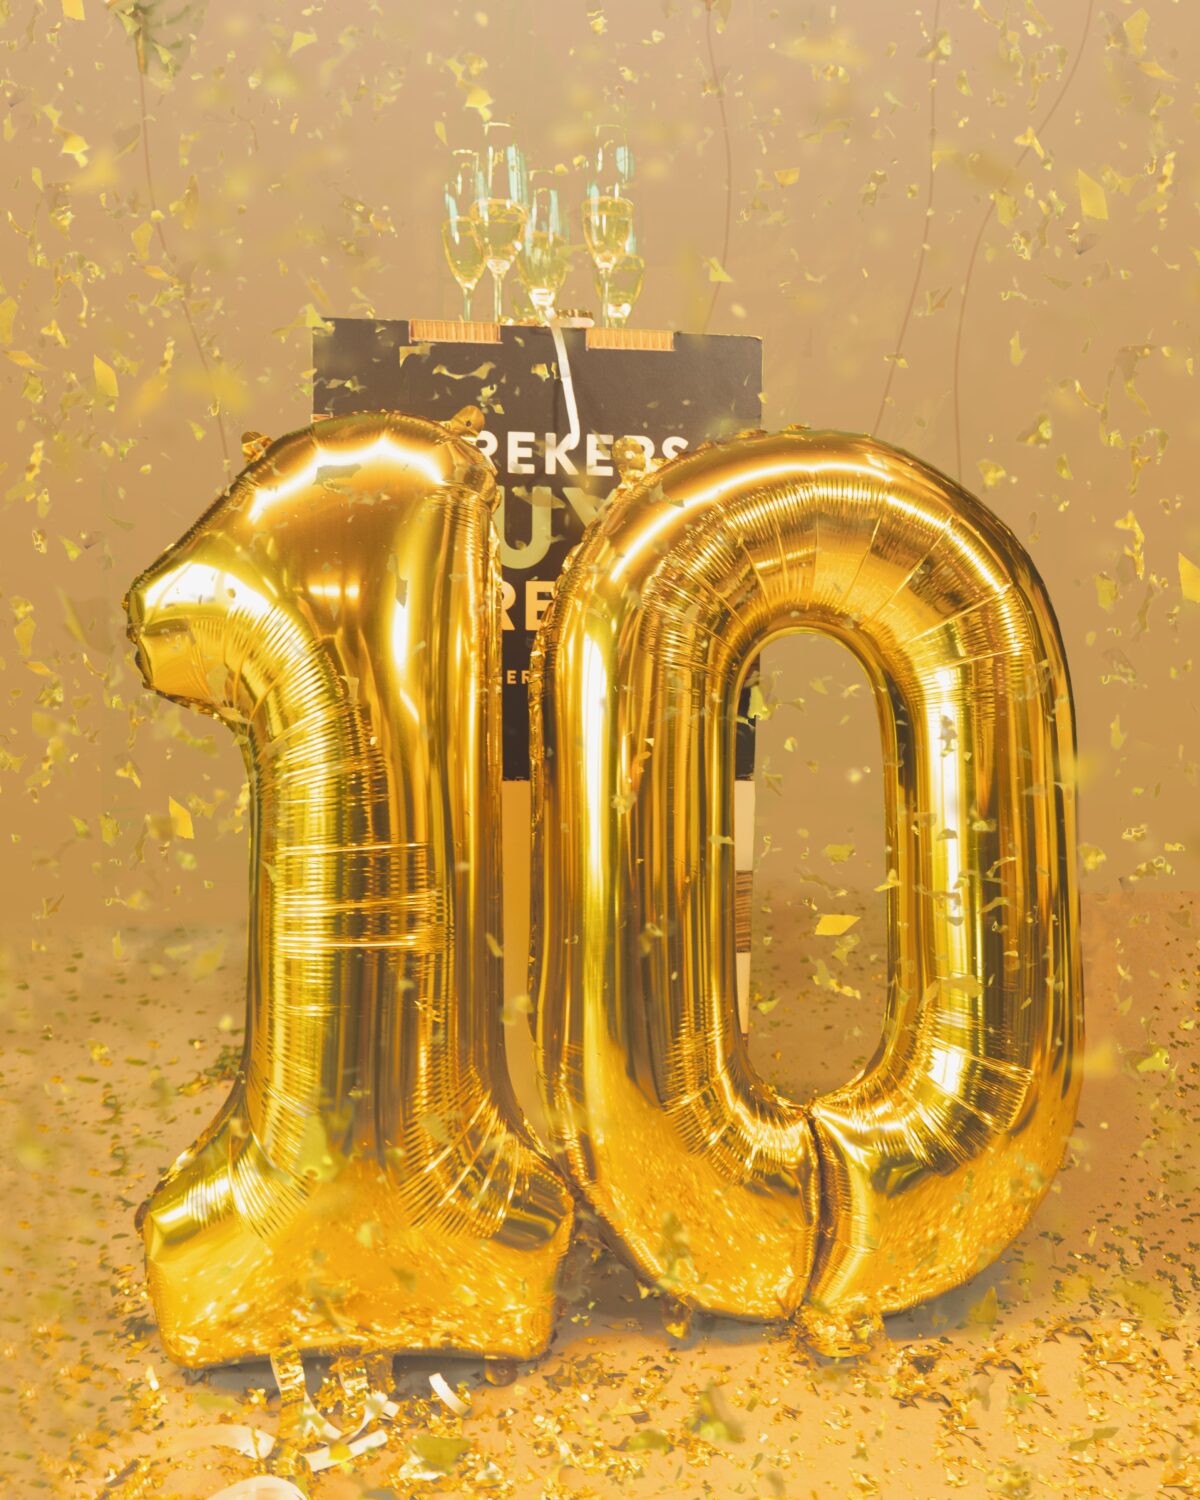 Sprekershuys 10 jaar ballonnen